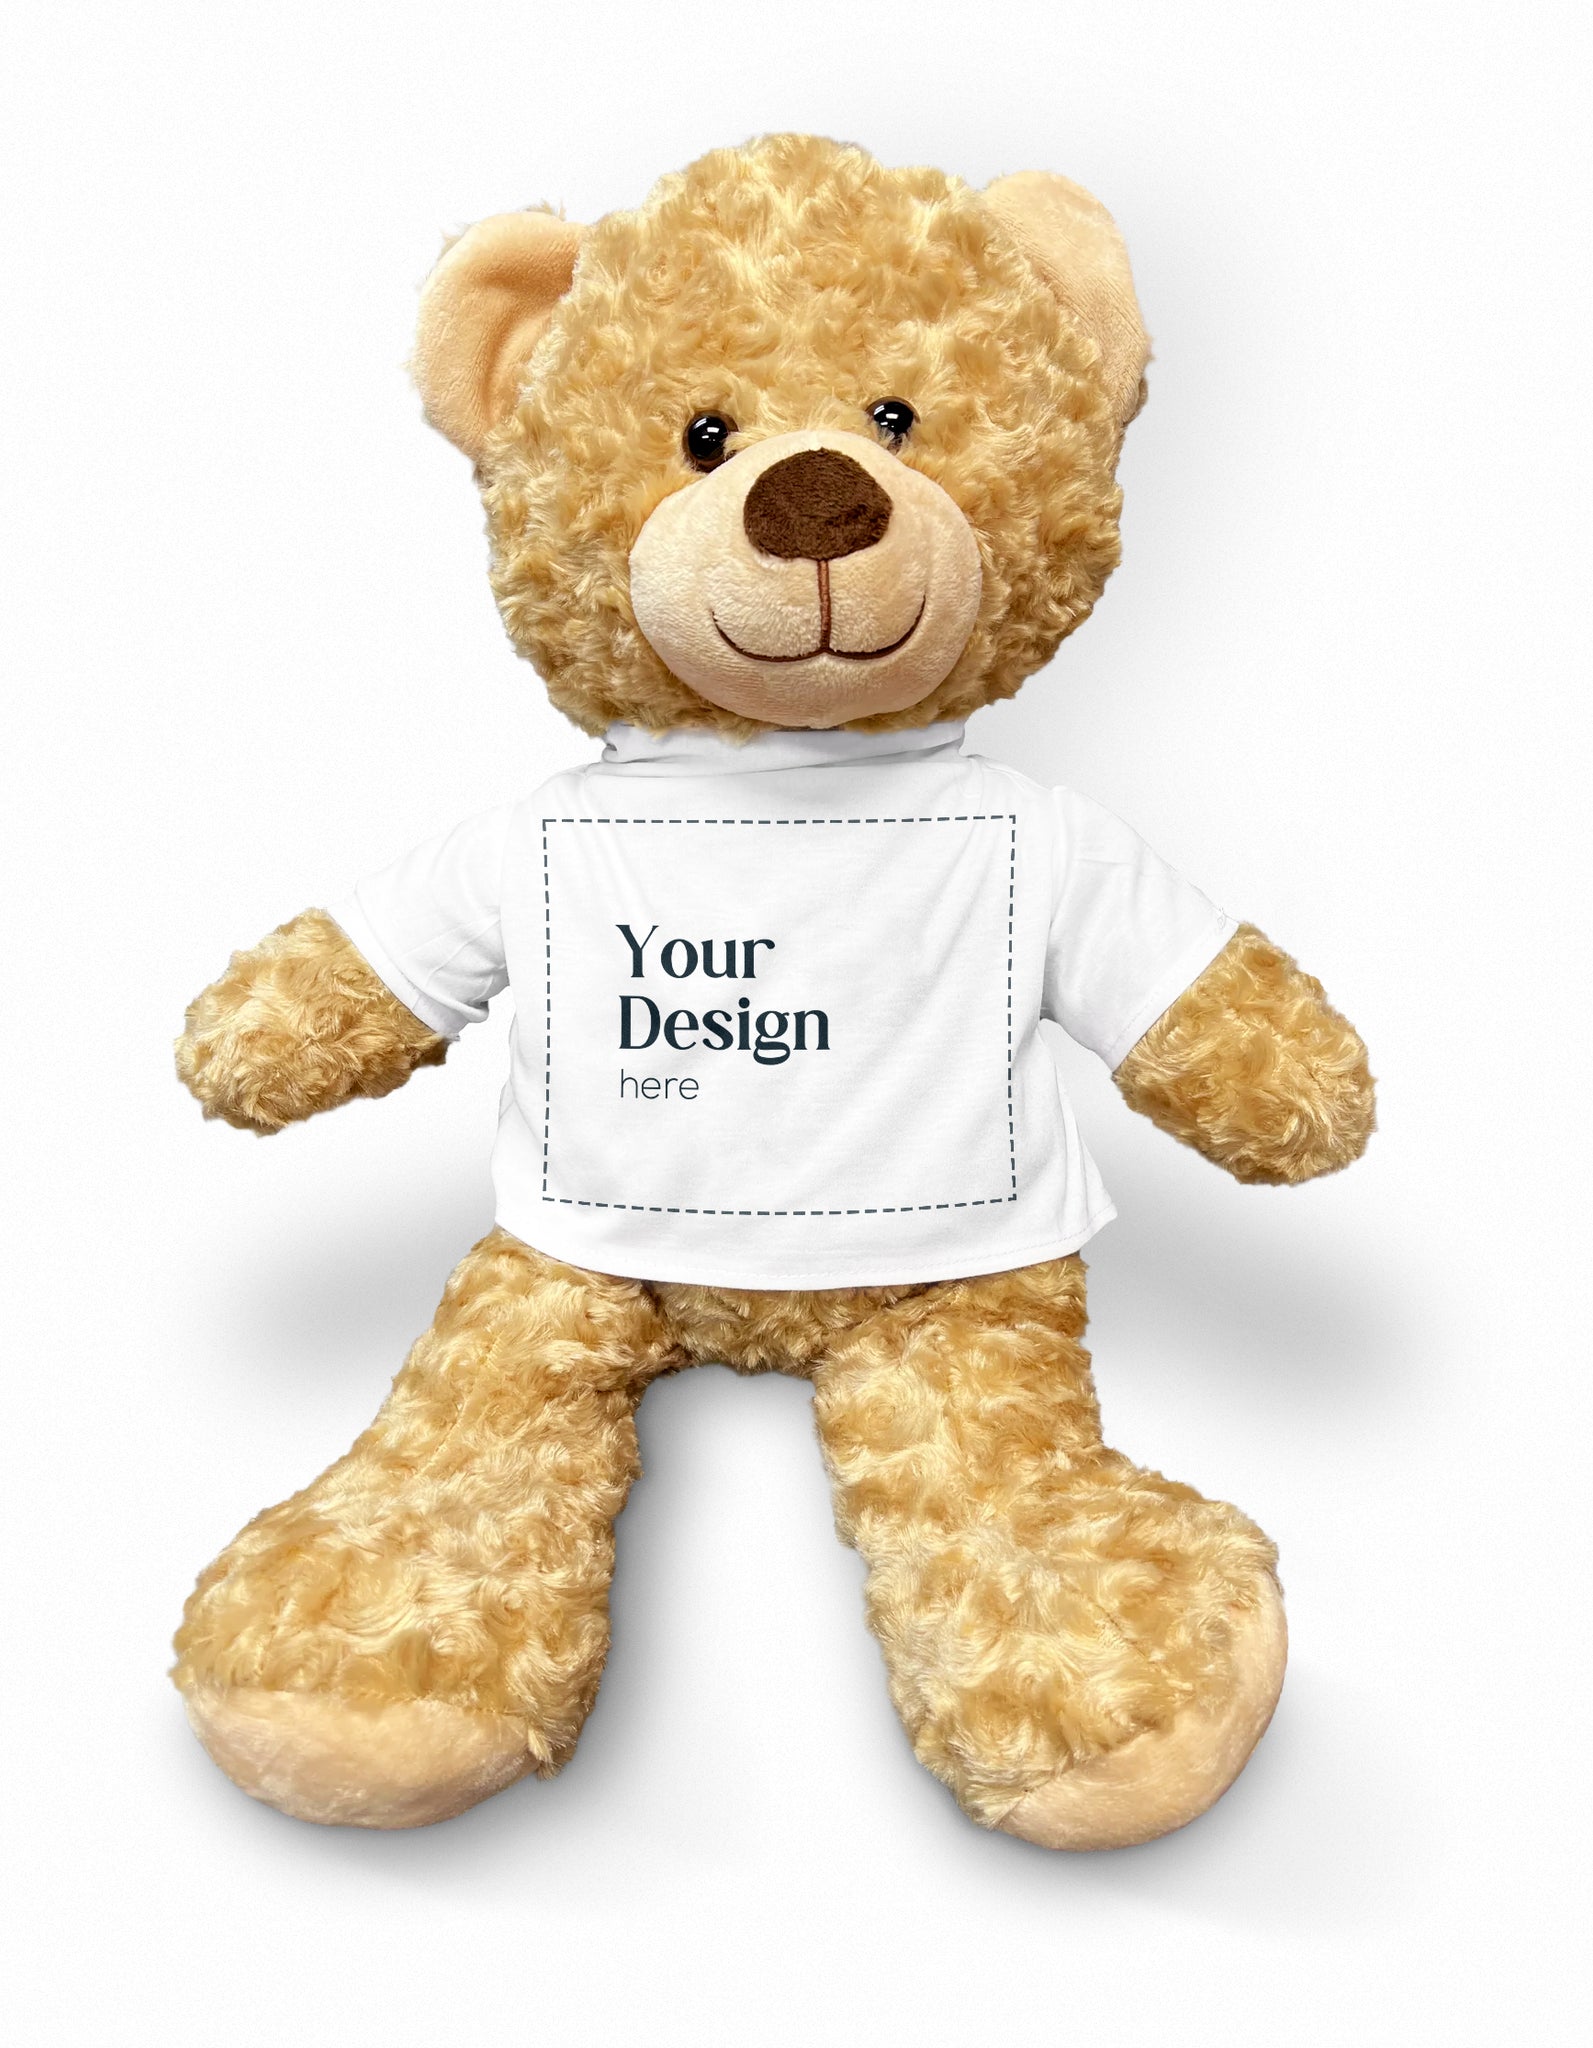 Print on Demand Plush Teddy Bear with Tee – CustomHappy, teddy print